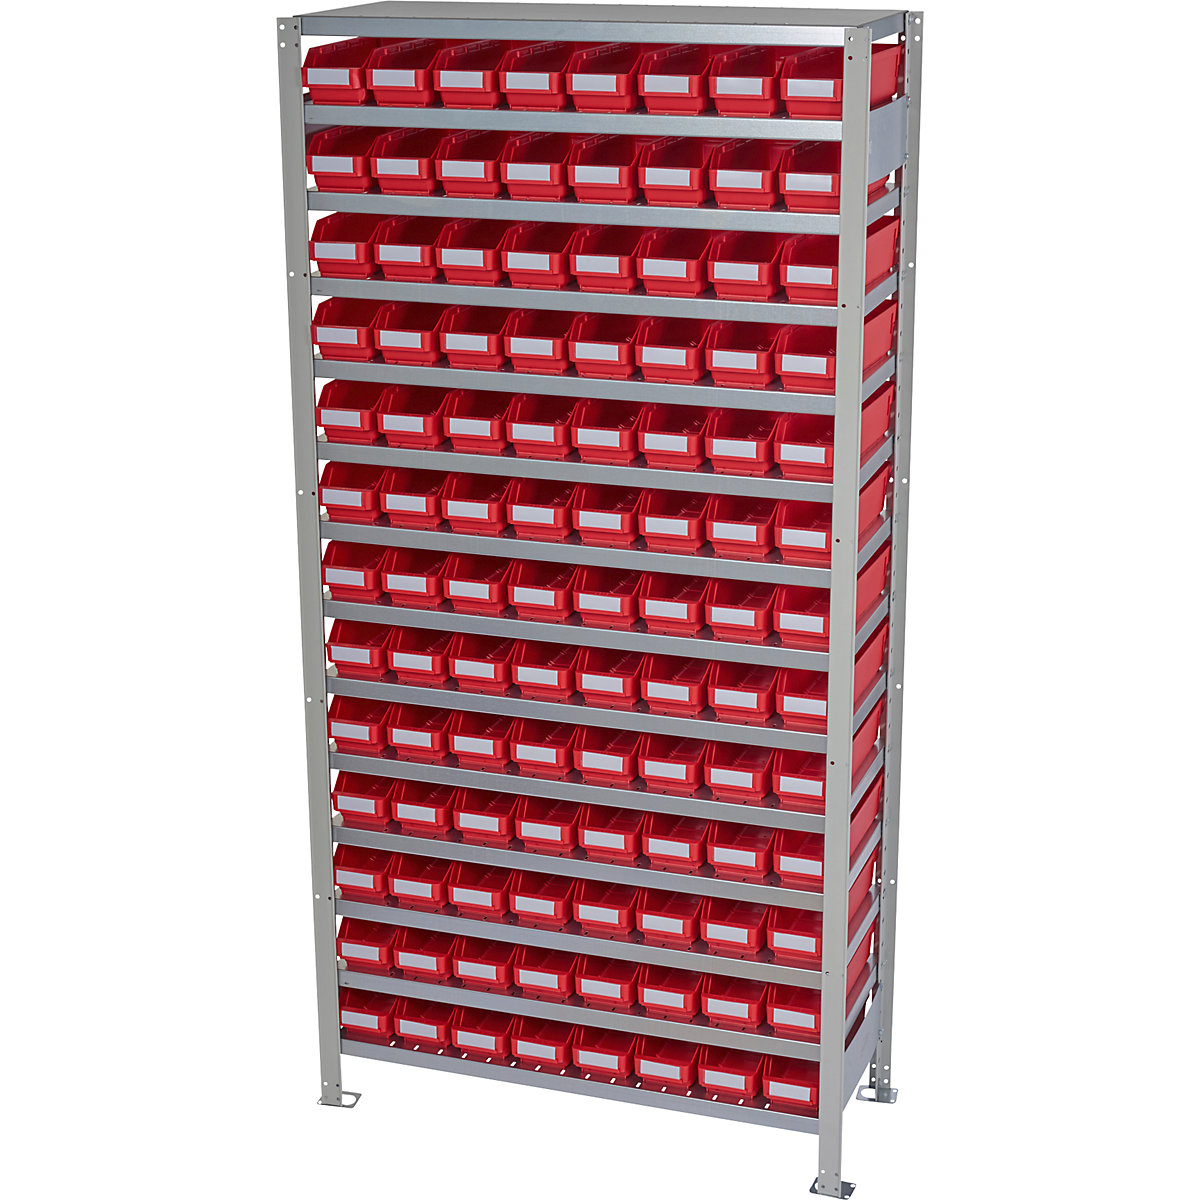 Összedugaszolós állvány dobozokkal – STEMO, állványmagasság 2100 mm, alapállvány, 400 mm mély, 104 piros doboz-43